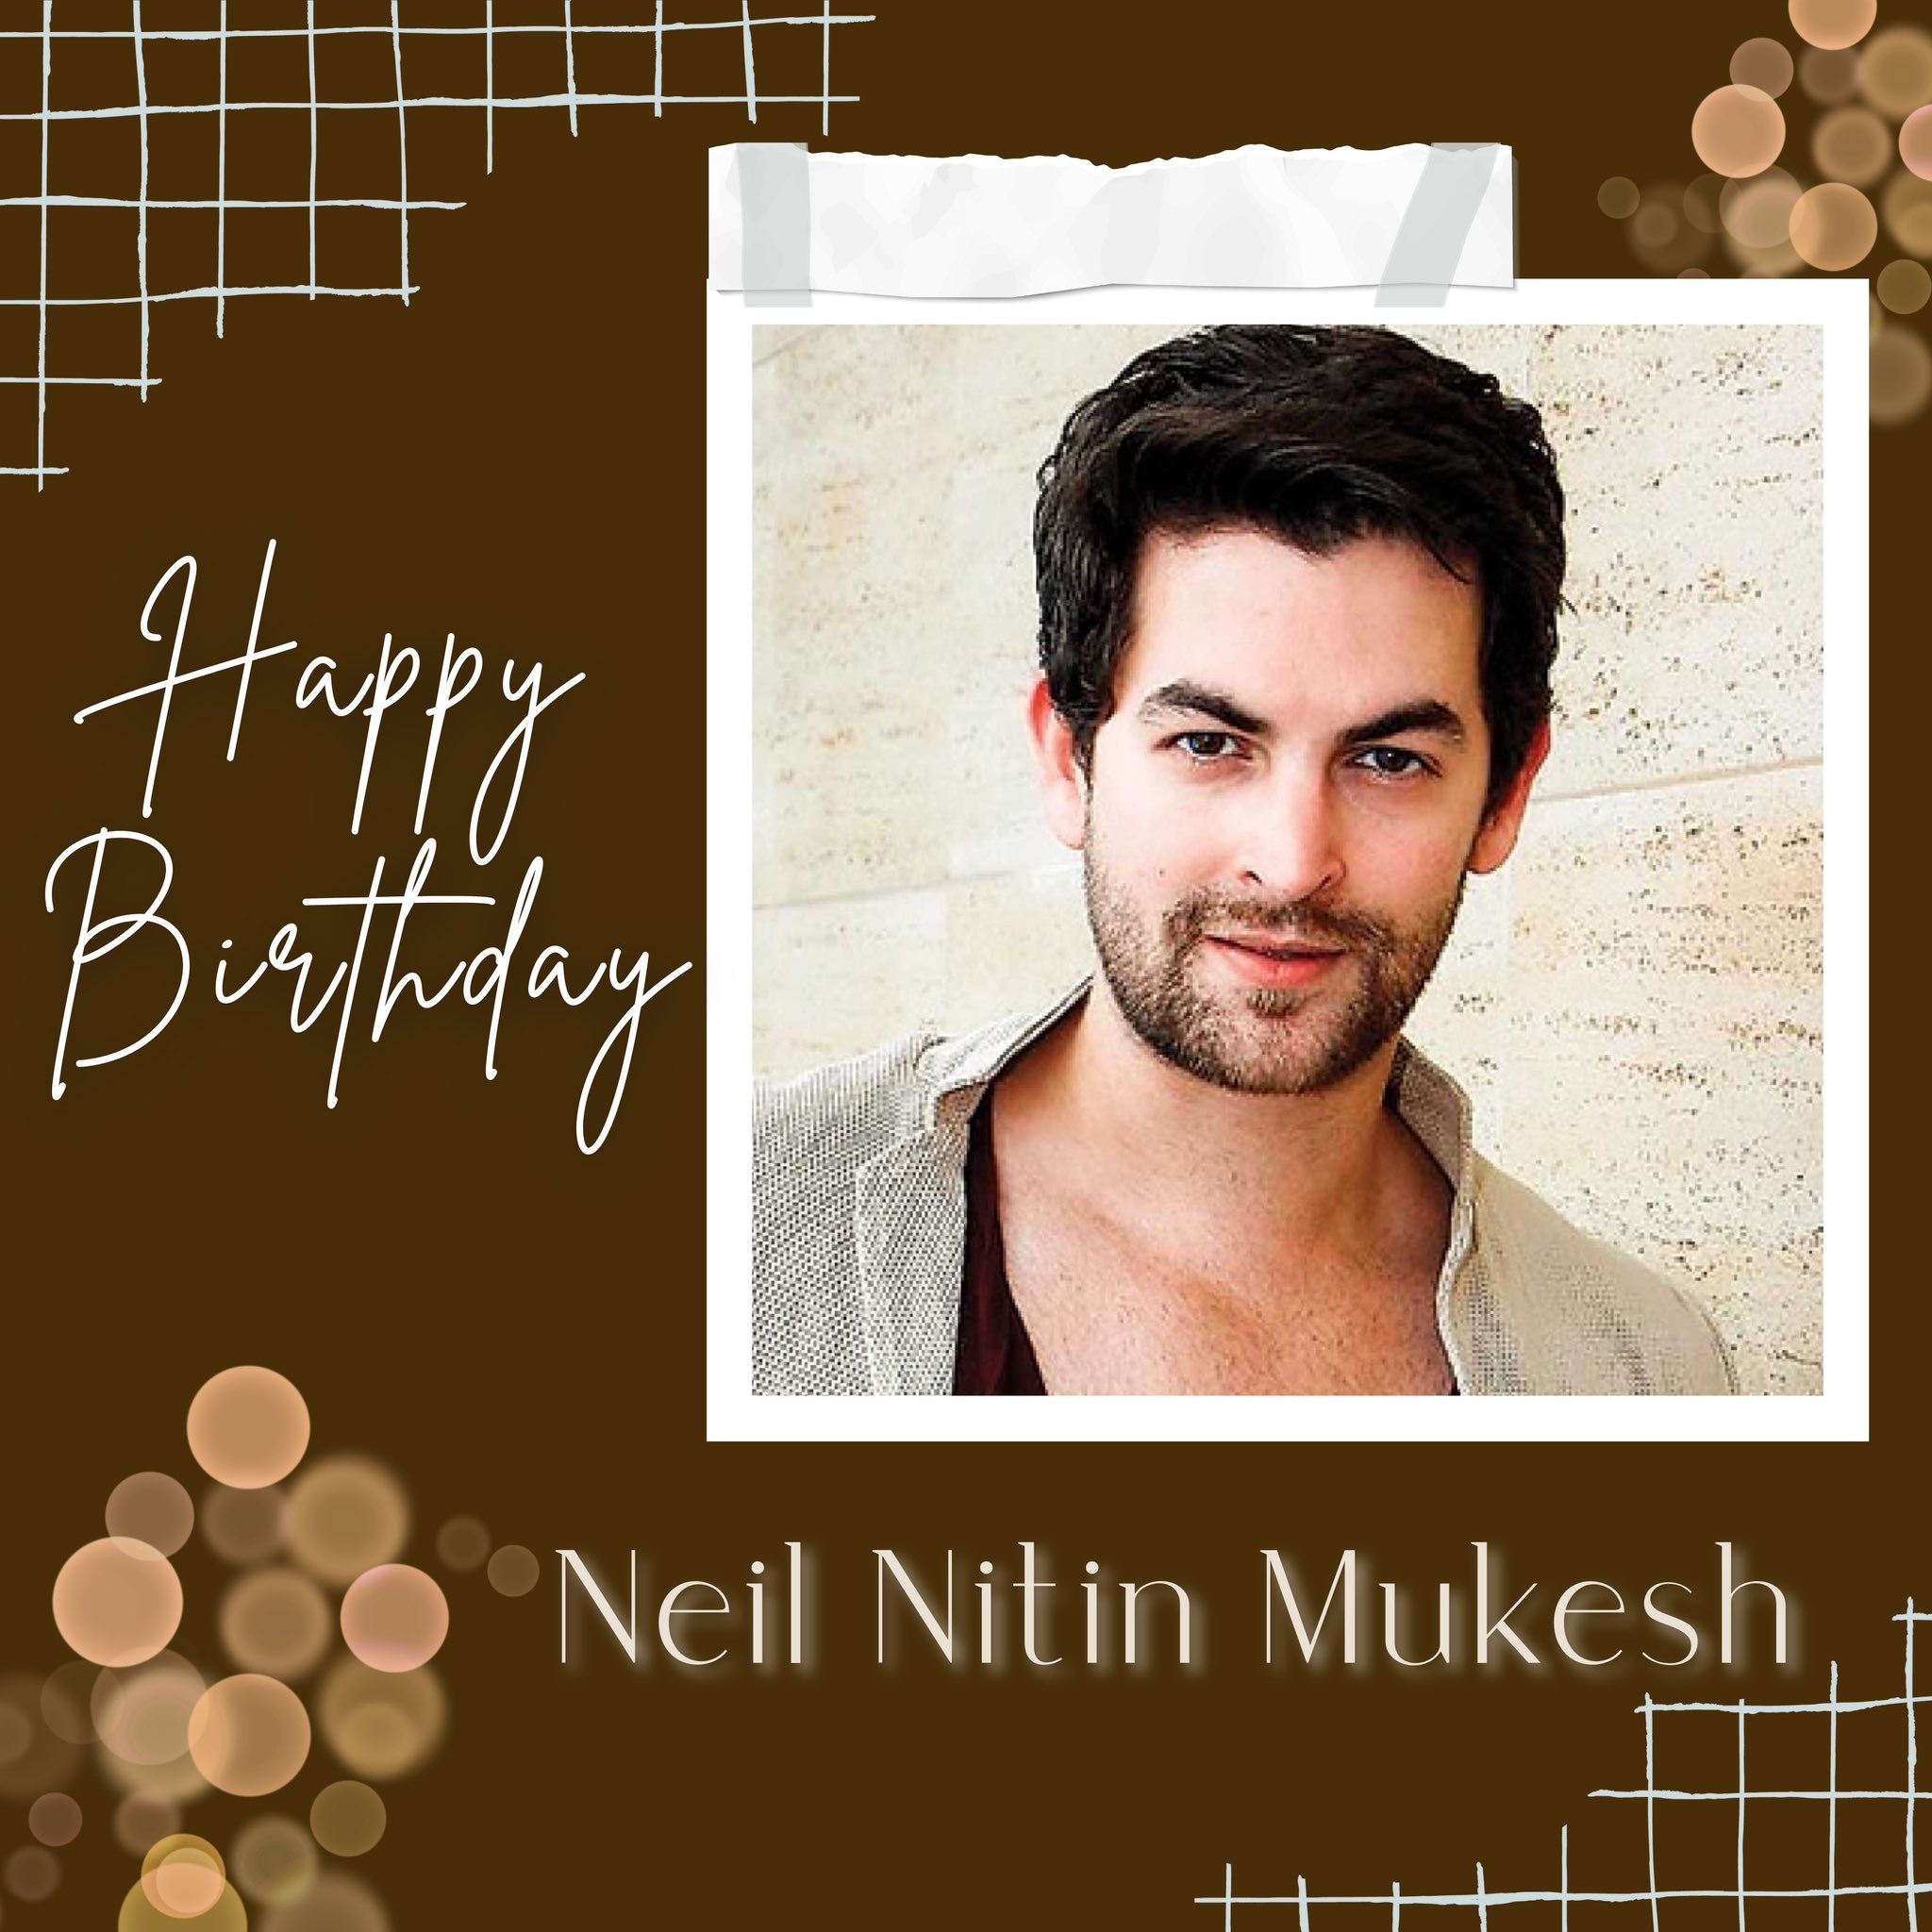 Happy birthday Neil Nitin Mukesh   